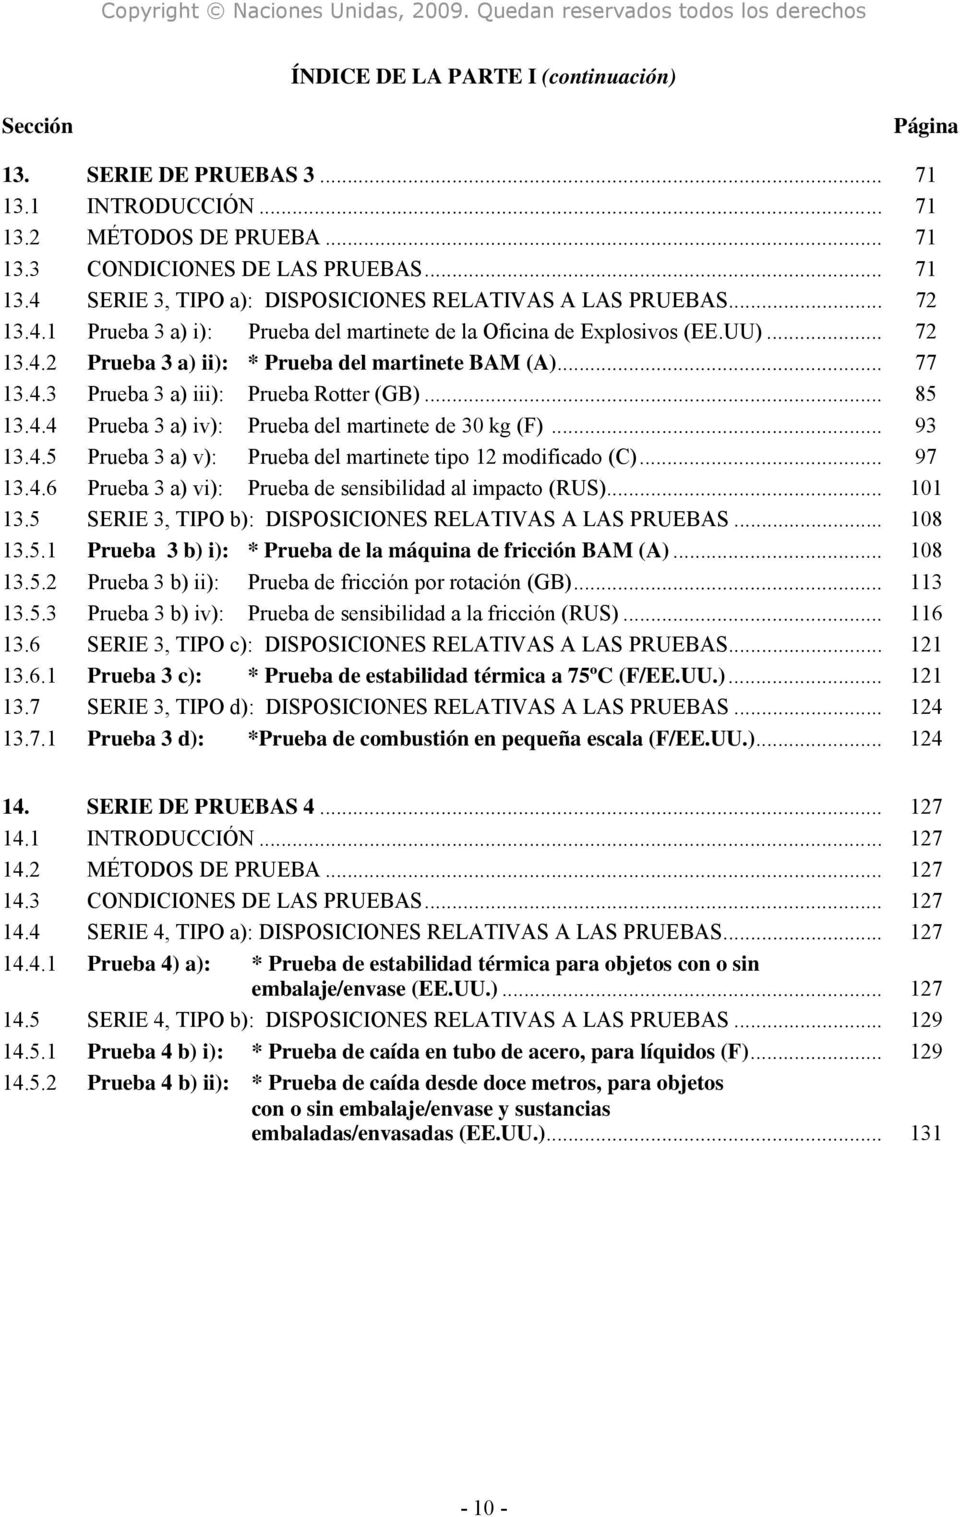 .. 85 13.4.4 Prueba 3 a) iv): Prueba del martinete de 30 kg (F)... 93 13.4.5 Prueba 3 a) v): Prueba del martinete tipo 12 modificado (C)... 97 13.4.6 Prueba 3 a) vi): Prueba de sensibilidad al impacto (RUS).